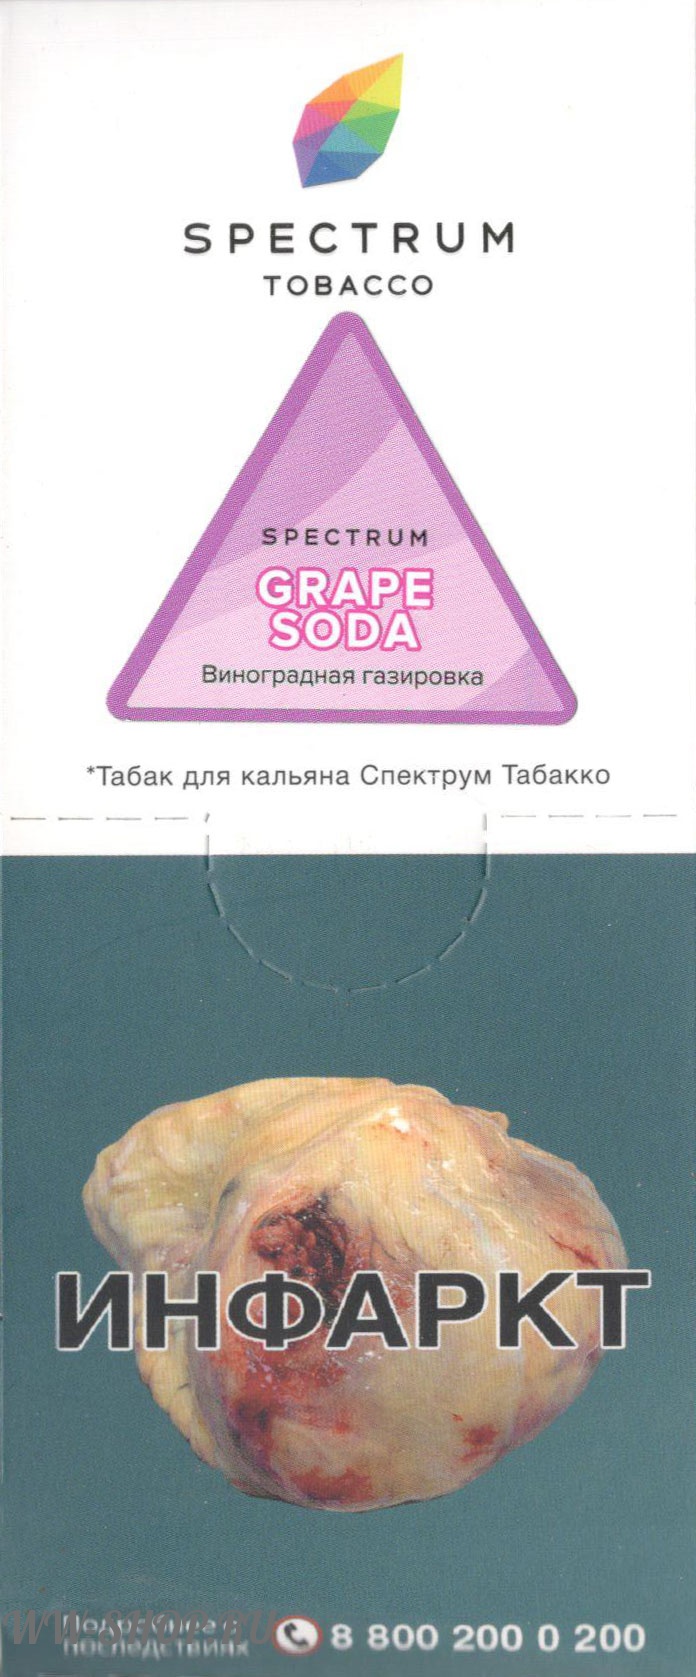 spectrum- виноградная газировка (grape soda) Муром